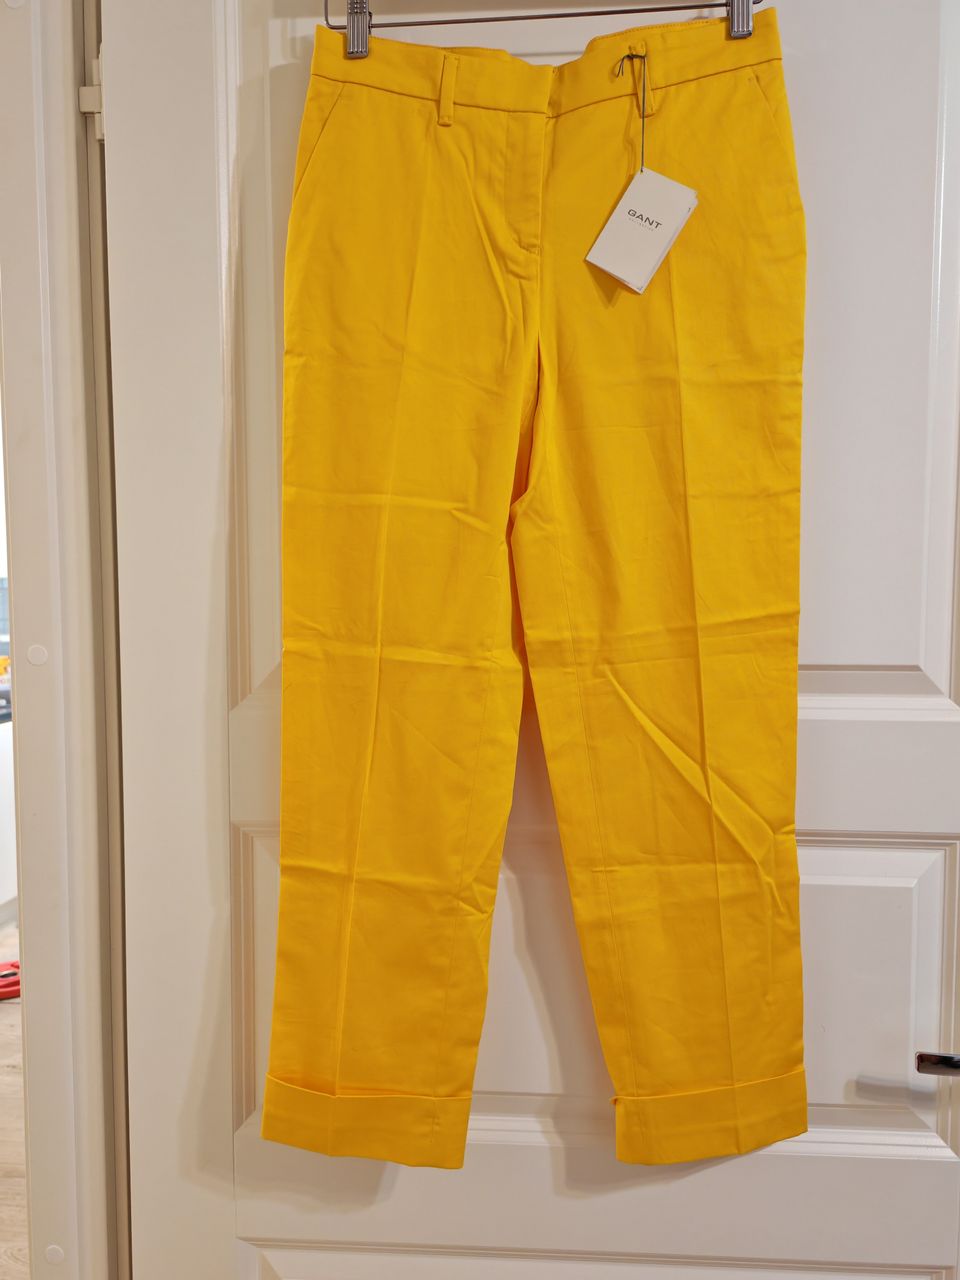 Gant keltaiset housut koko 34 uudet